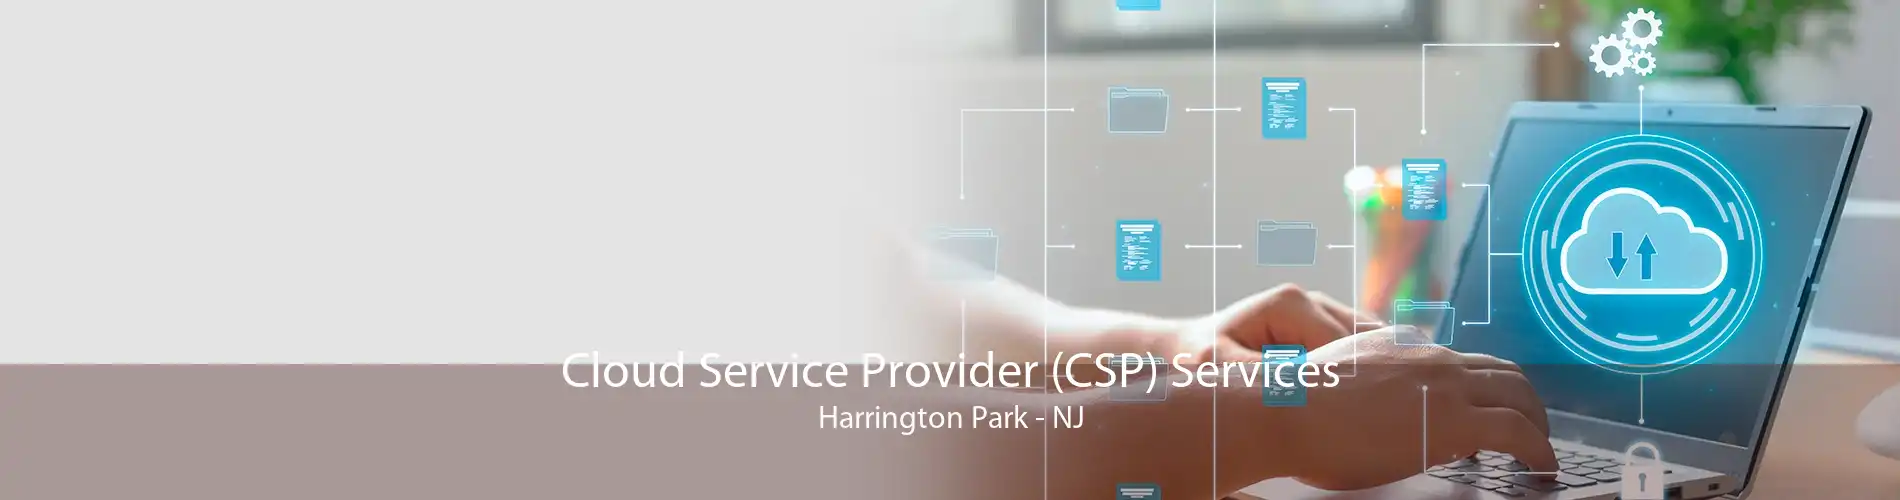 Cloud Service Provider (CSP) Services Harrington Park - NJ